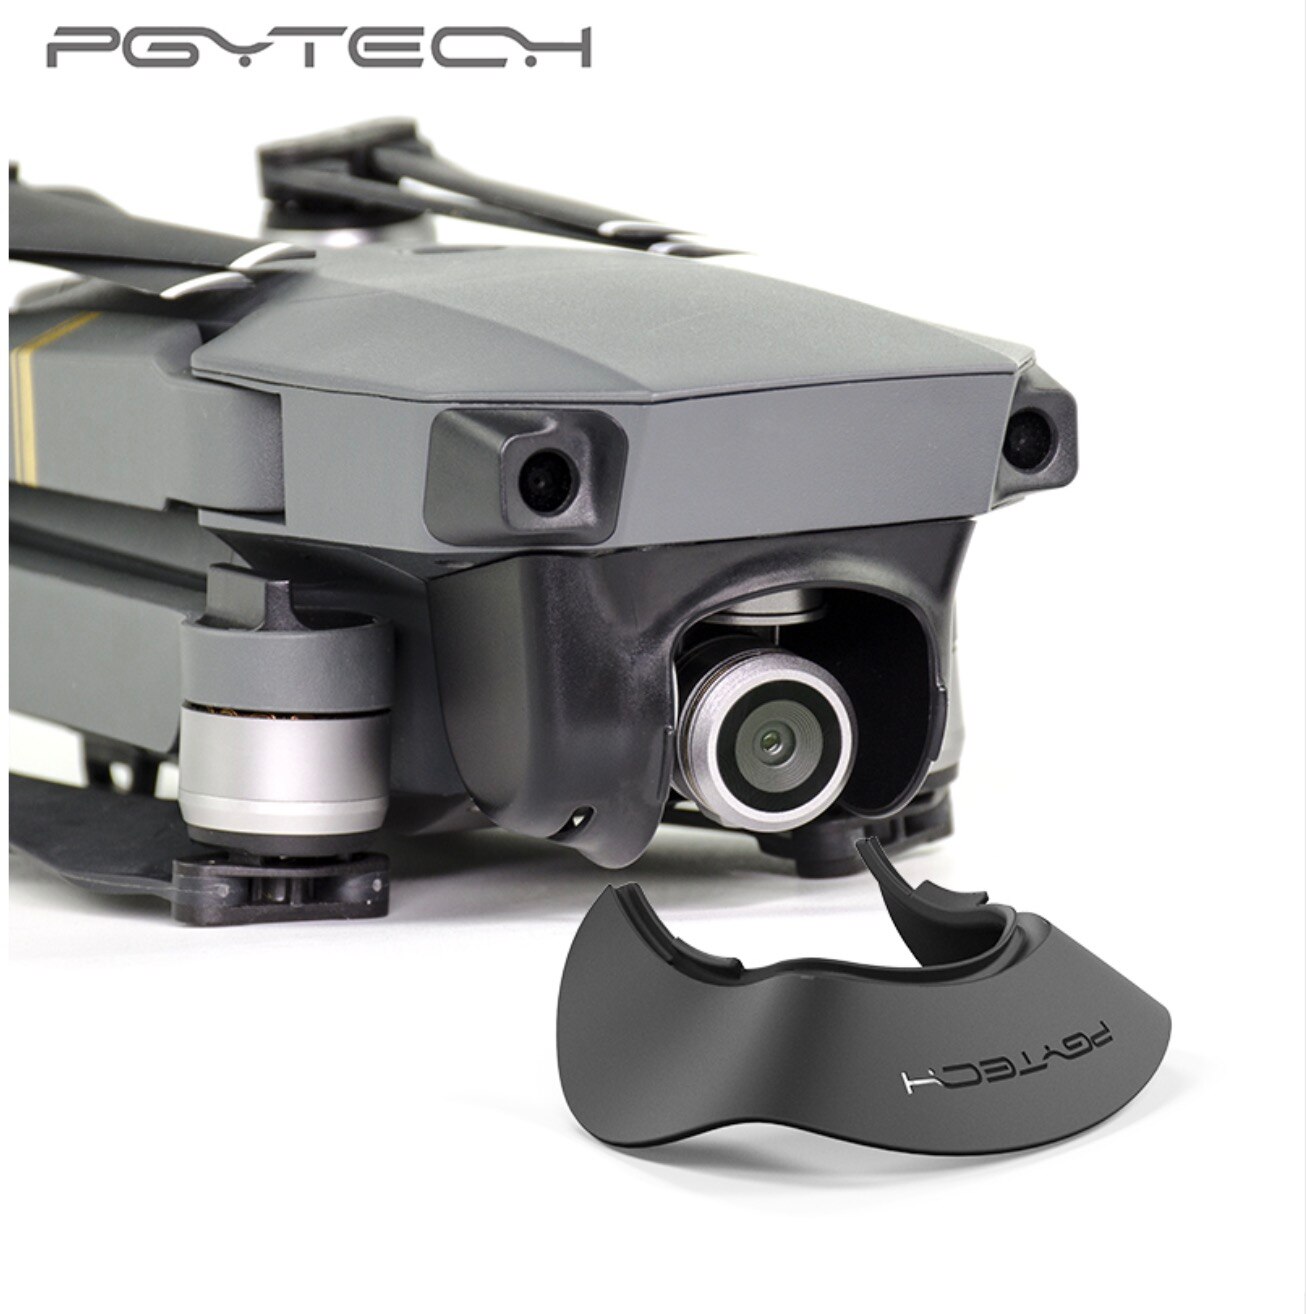 Pgytech objektiv kamera beskytter solskærm blænding skjold kardan skygge kamera mavic pro modlysblænde til dji mavic pro tilbehør